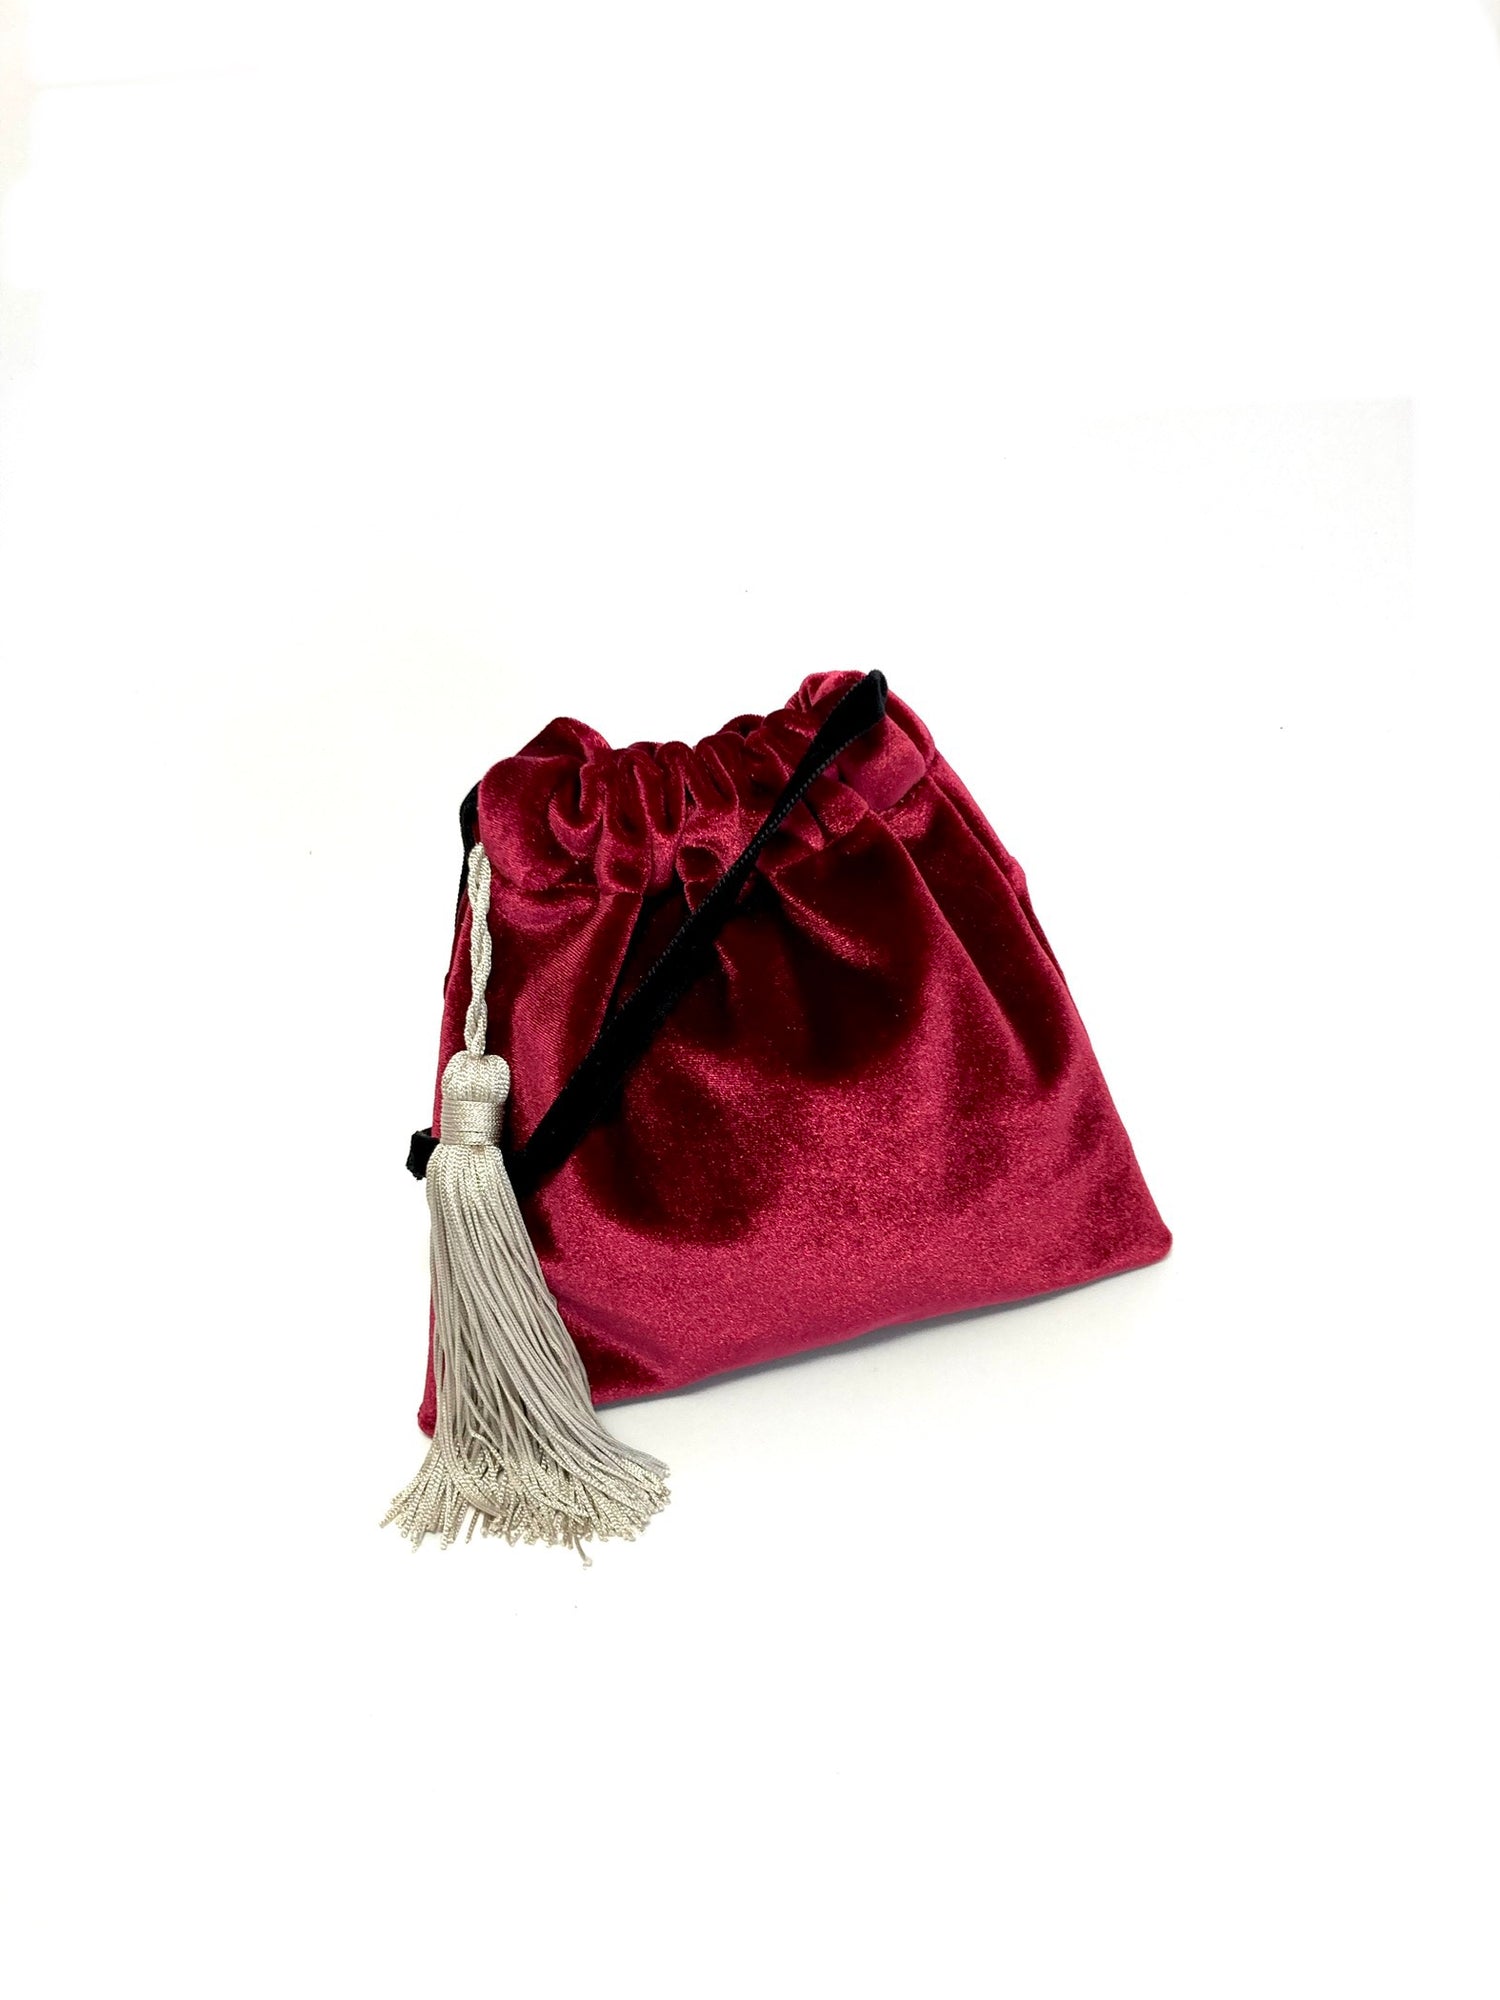 Red velvet little handbag – There Is No More!